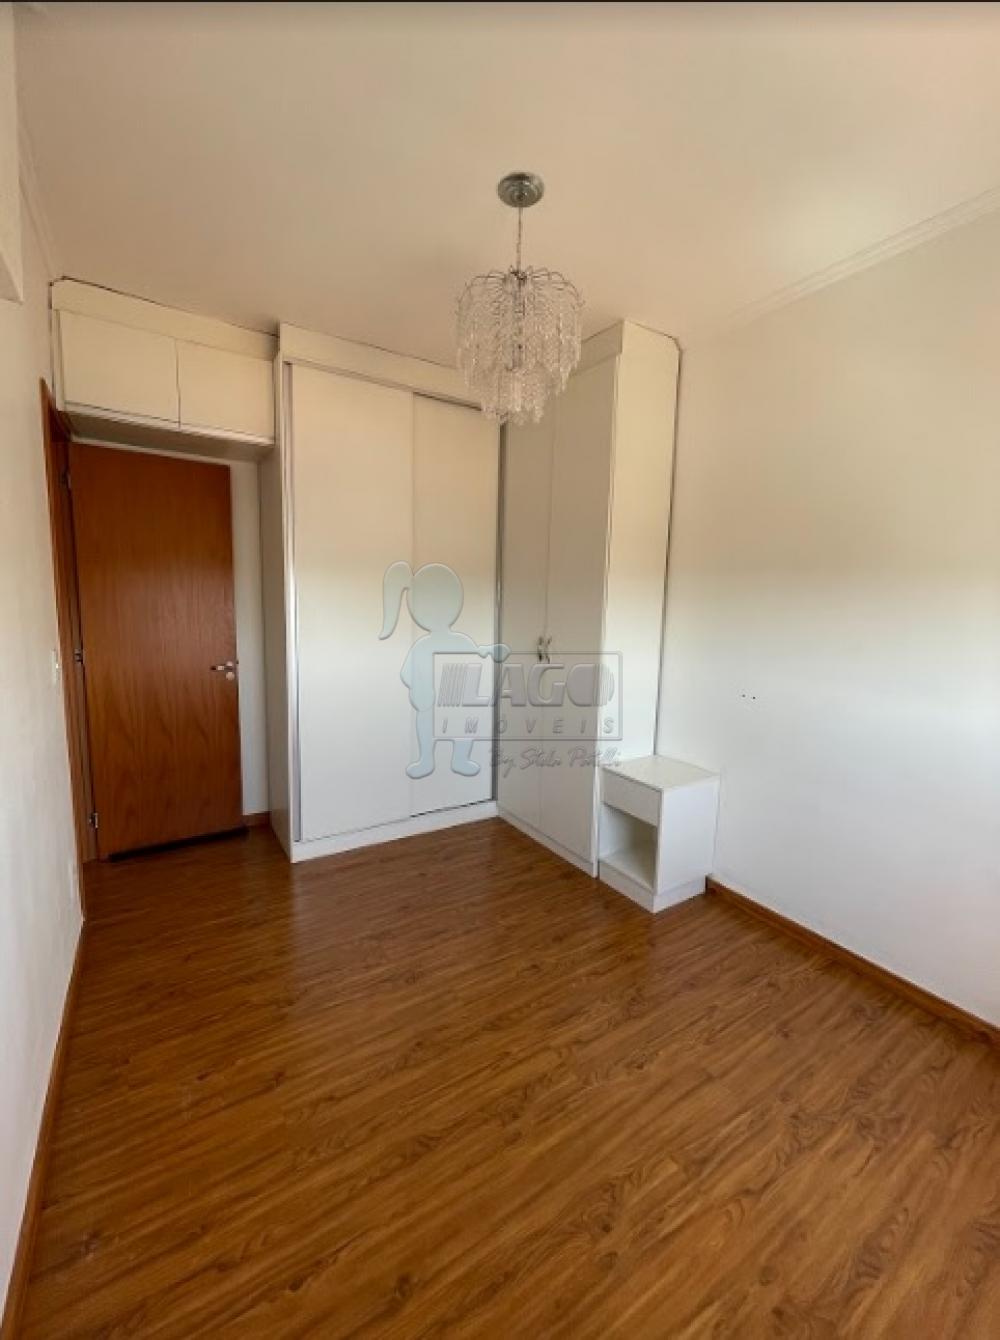 Comprar Apartamentos / Padrão em Ribeirão Preto R$ 265.000,00 - Foto 4